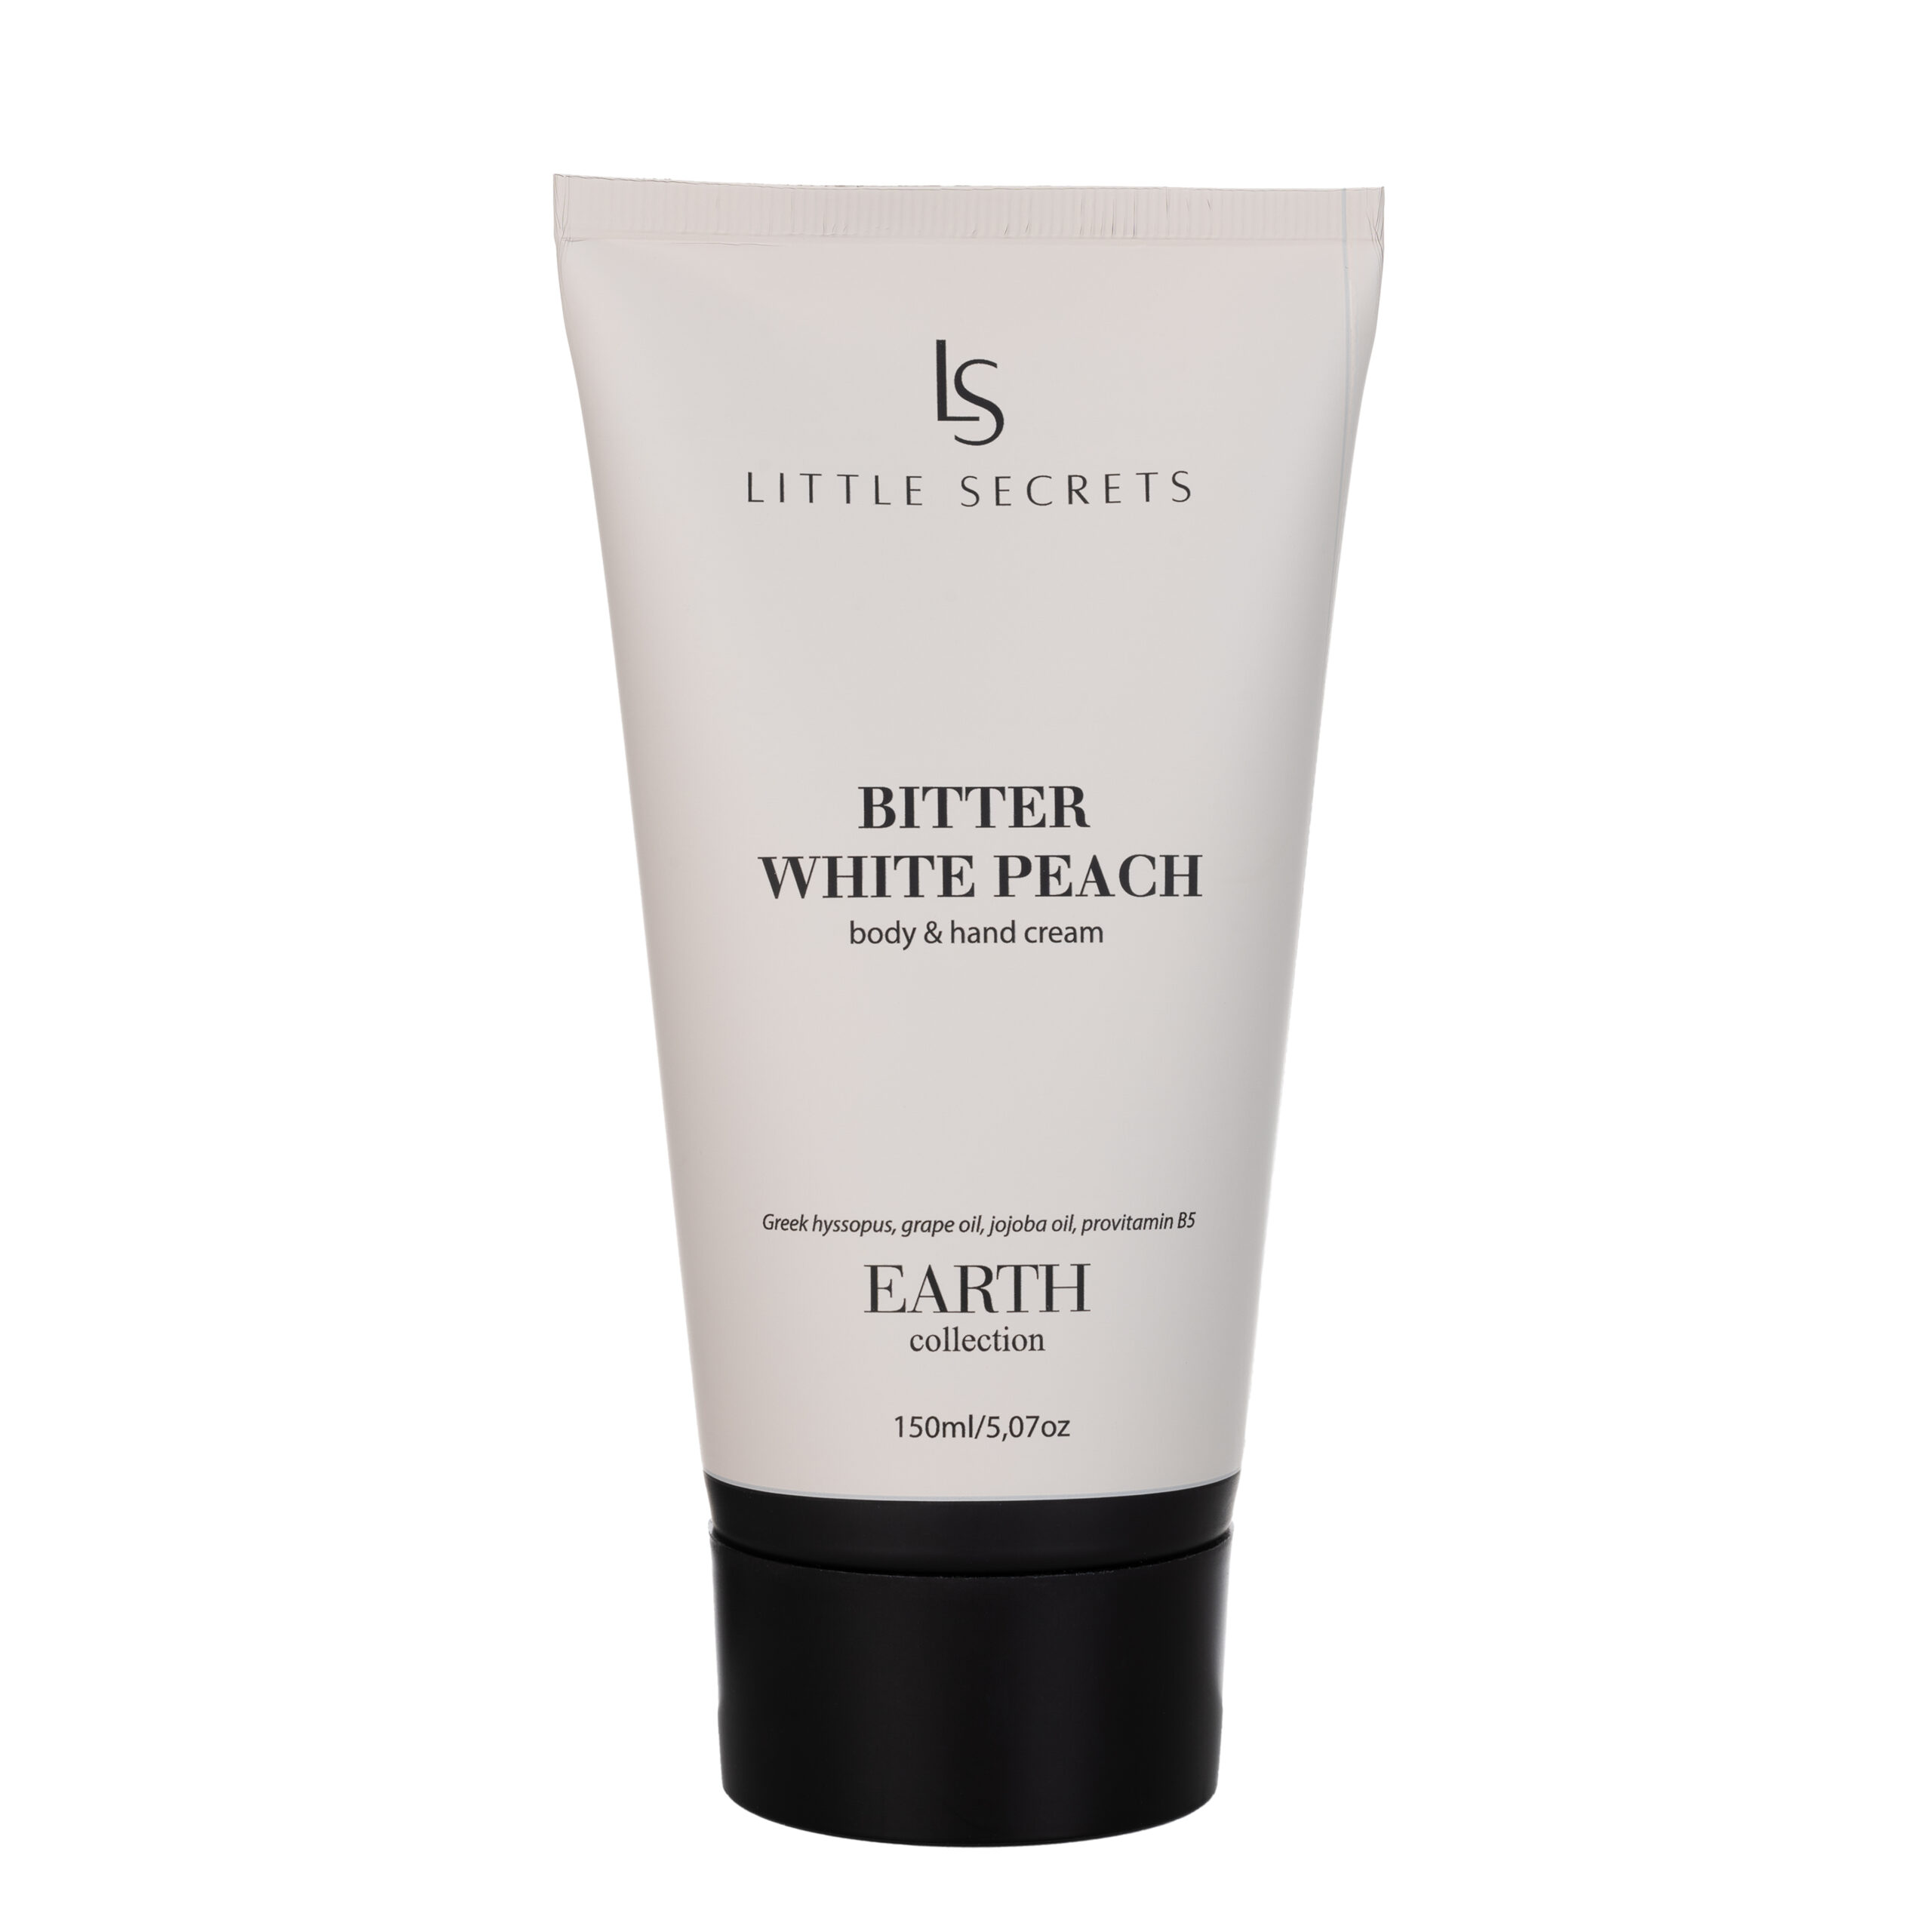 Bitter White Peach Body & Hand Cream